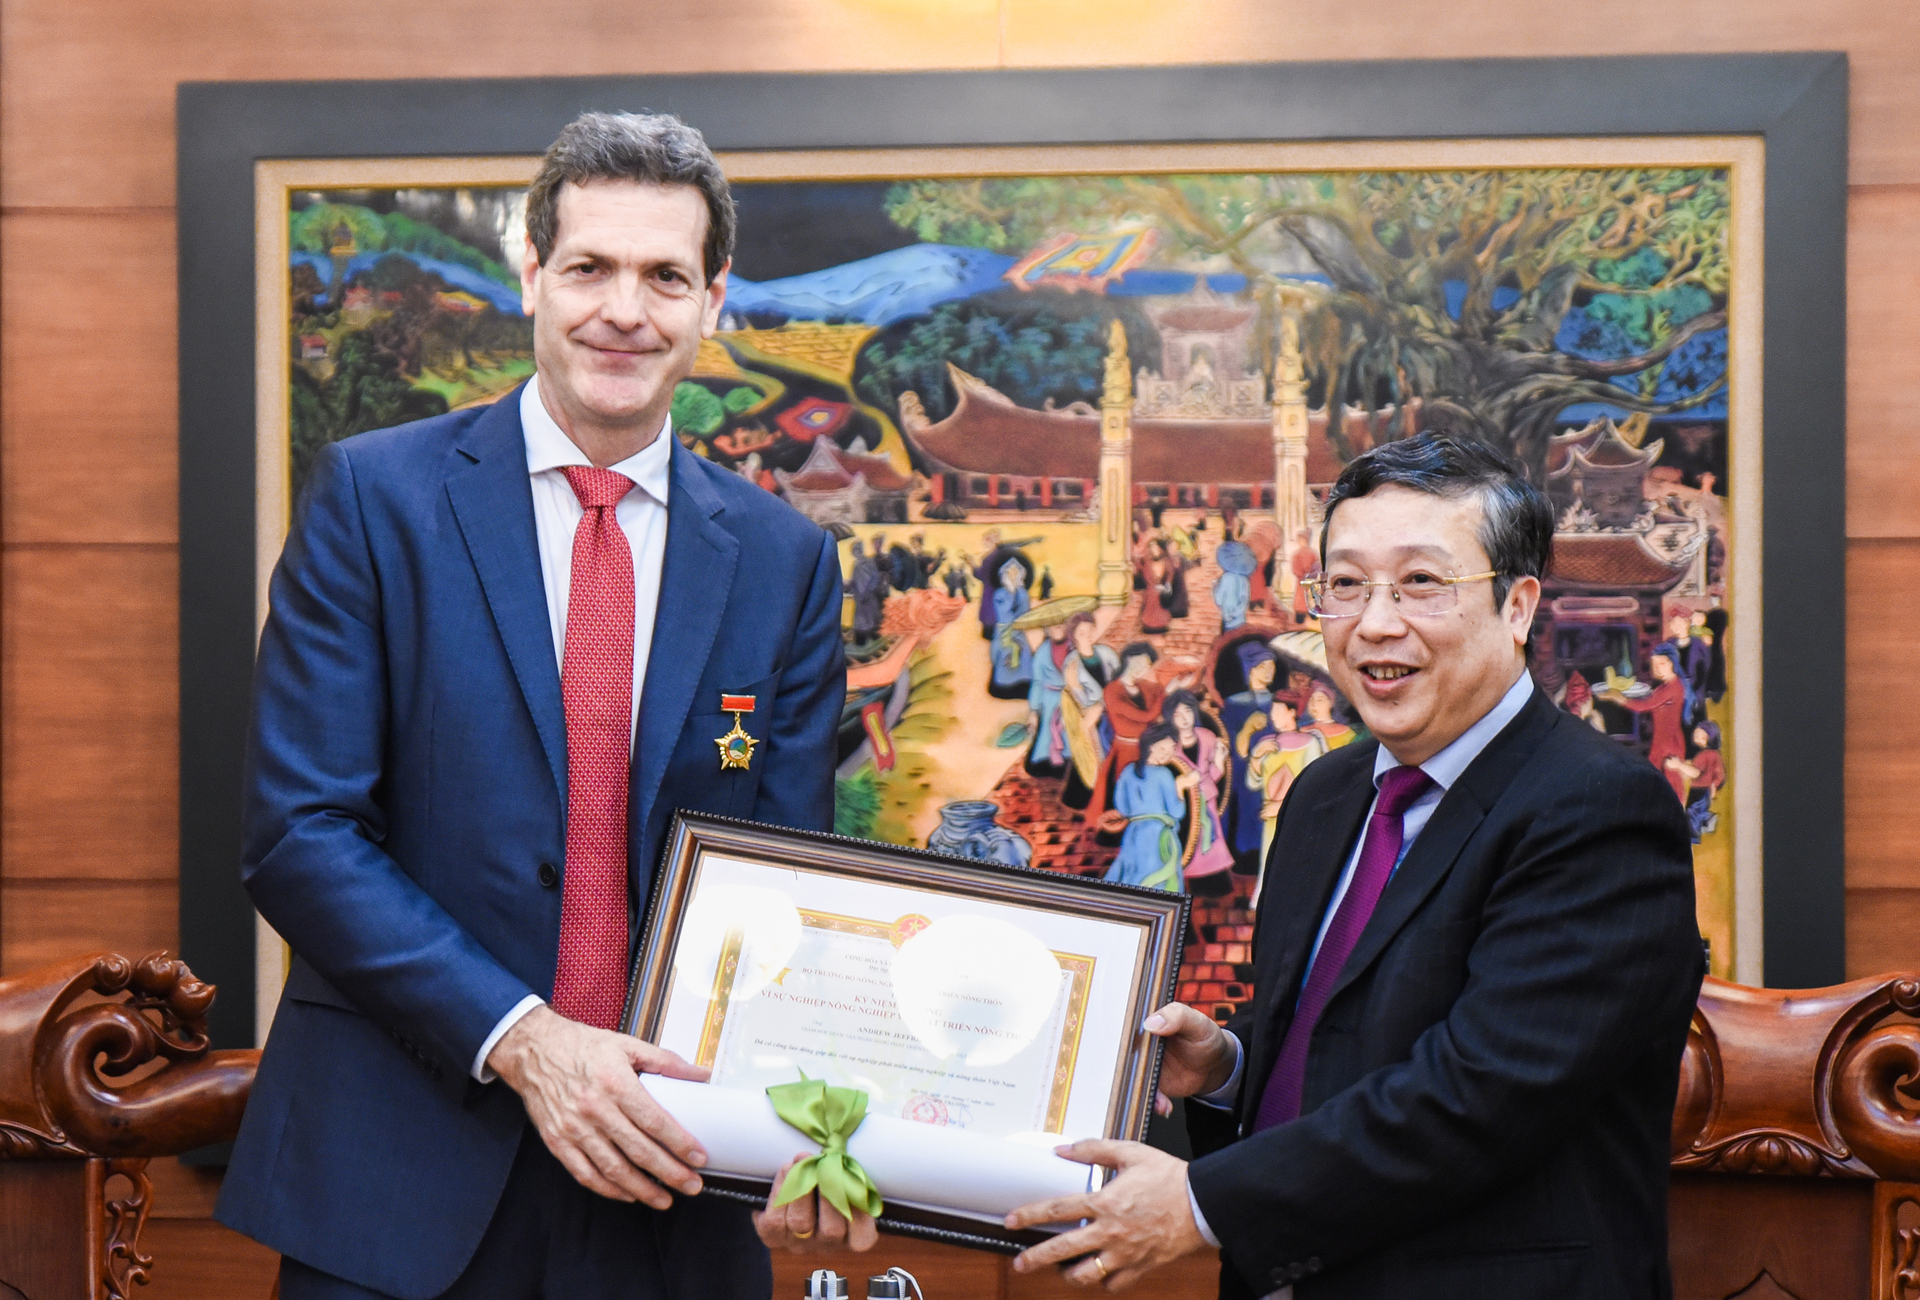 Thứ trưởng Hoàng Trung trao Kỷ niệm chương Vì sự nghiệp NN-PTNT cho nguyên Giám đốc ADB Việt Nam. Ảnh: Quỳnh Chi.